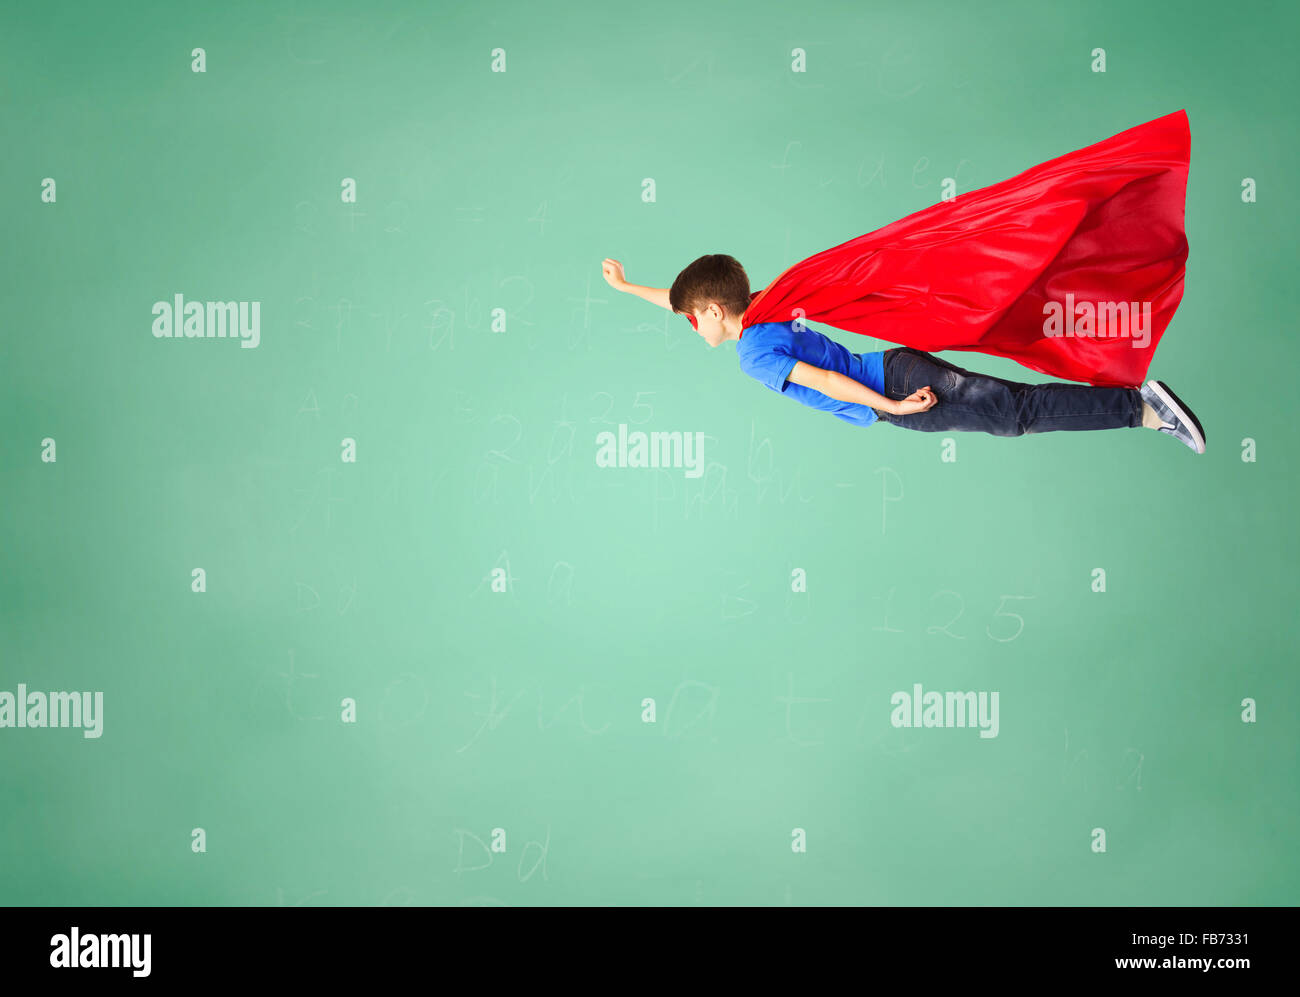 Junge im roten Superhelden Cape und Maske, die fliegen in der Luft Stockfoto